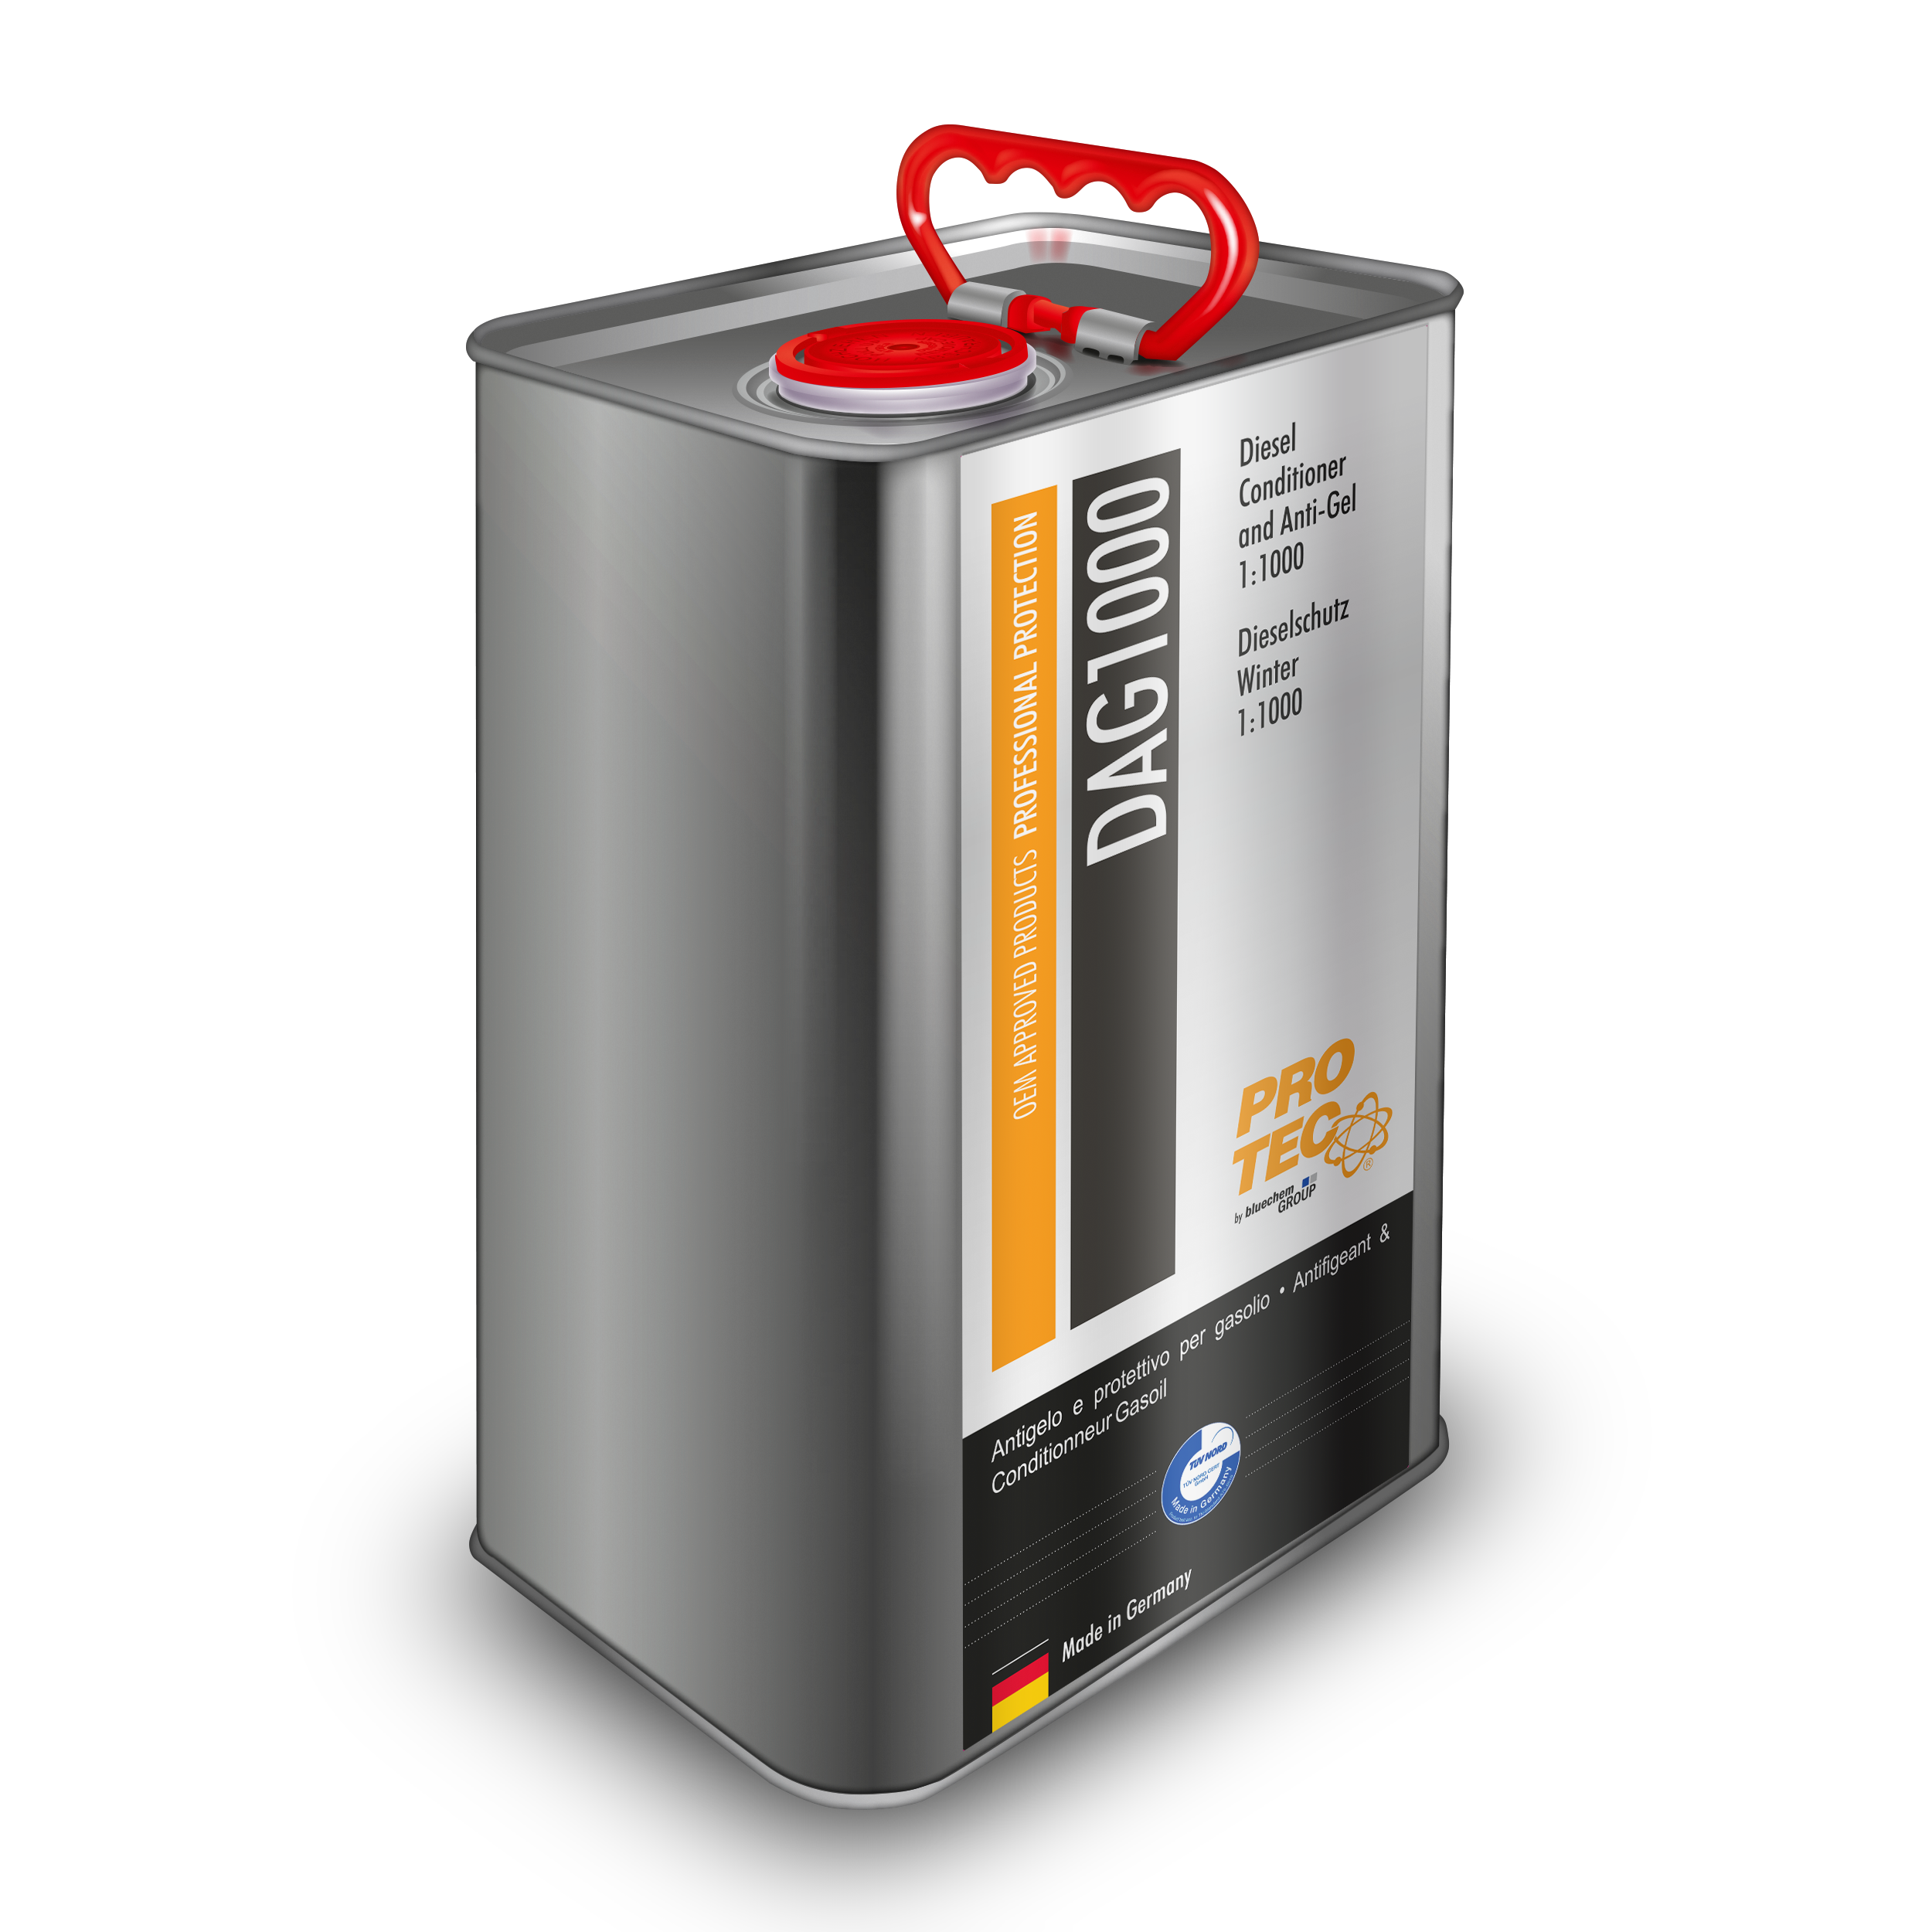 PRO-TEC Diesel Conditioner Anti Gel 1:1000